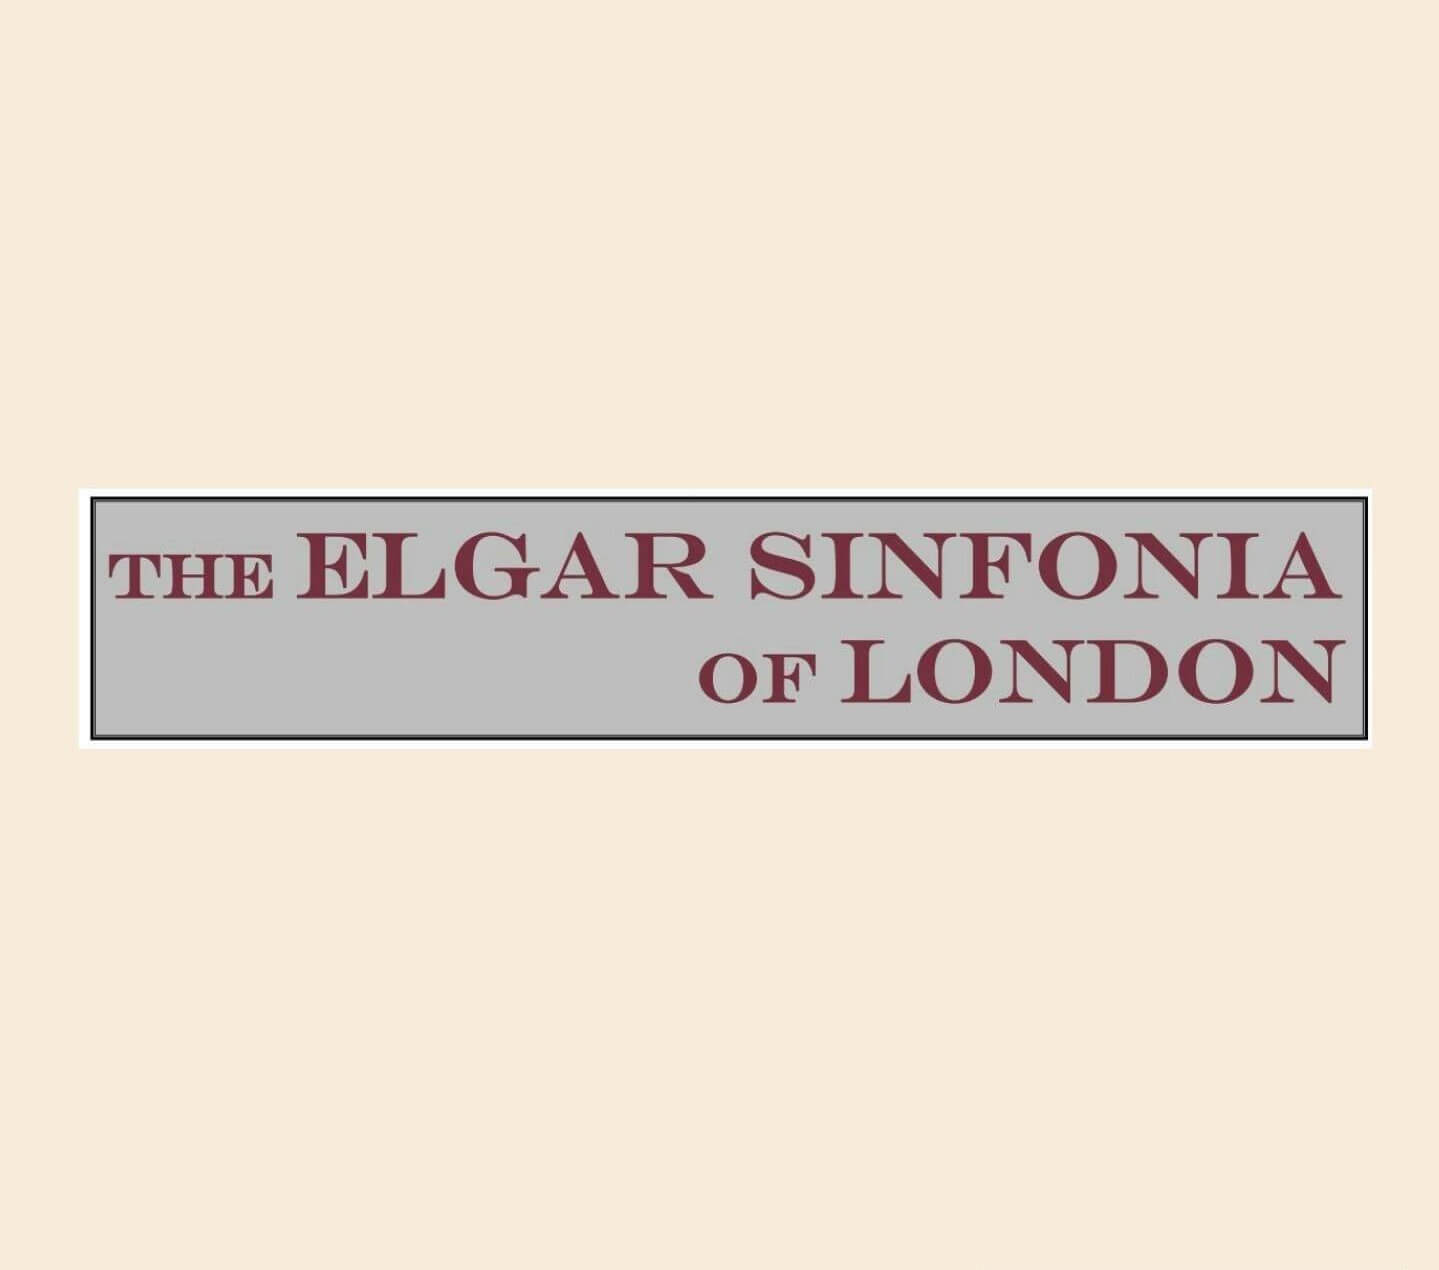 Elgar Sinfonia of London logo